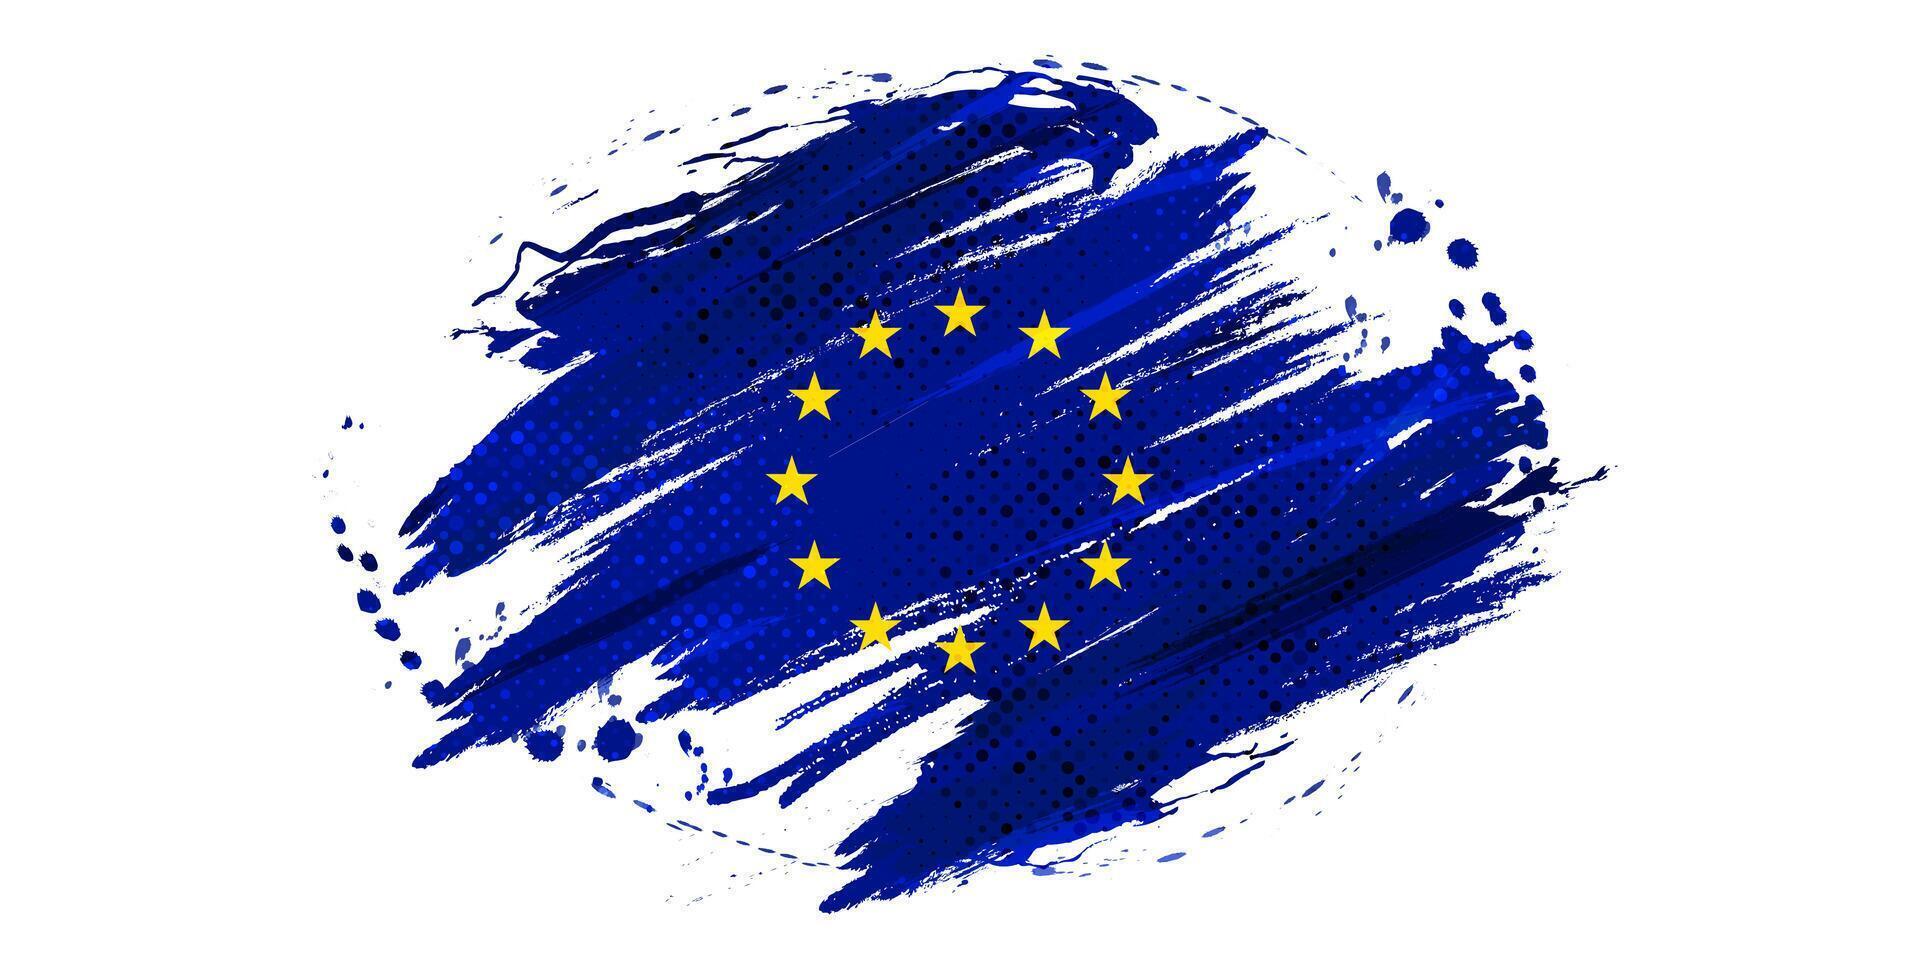 europeo Unión bandera en cepillo pintar estilo con trama de semitonos efecto. bandera de Europa con grunge concepto vector